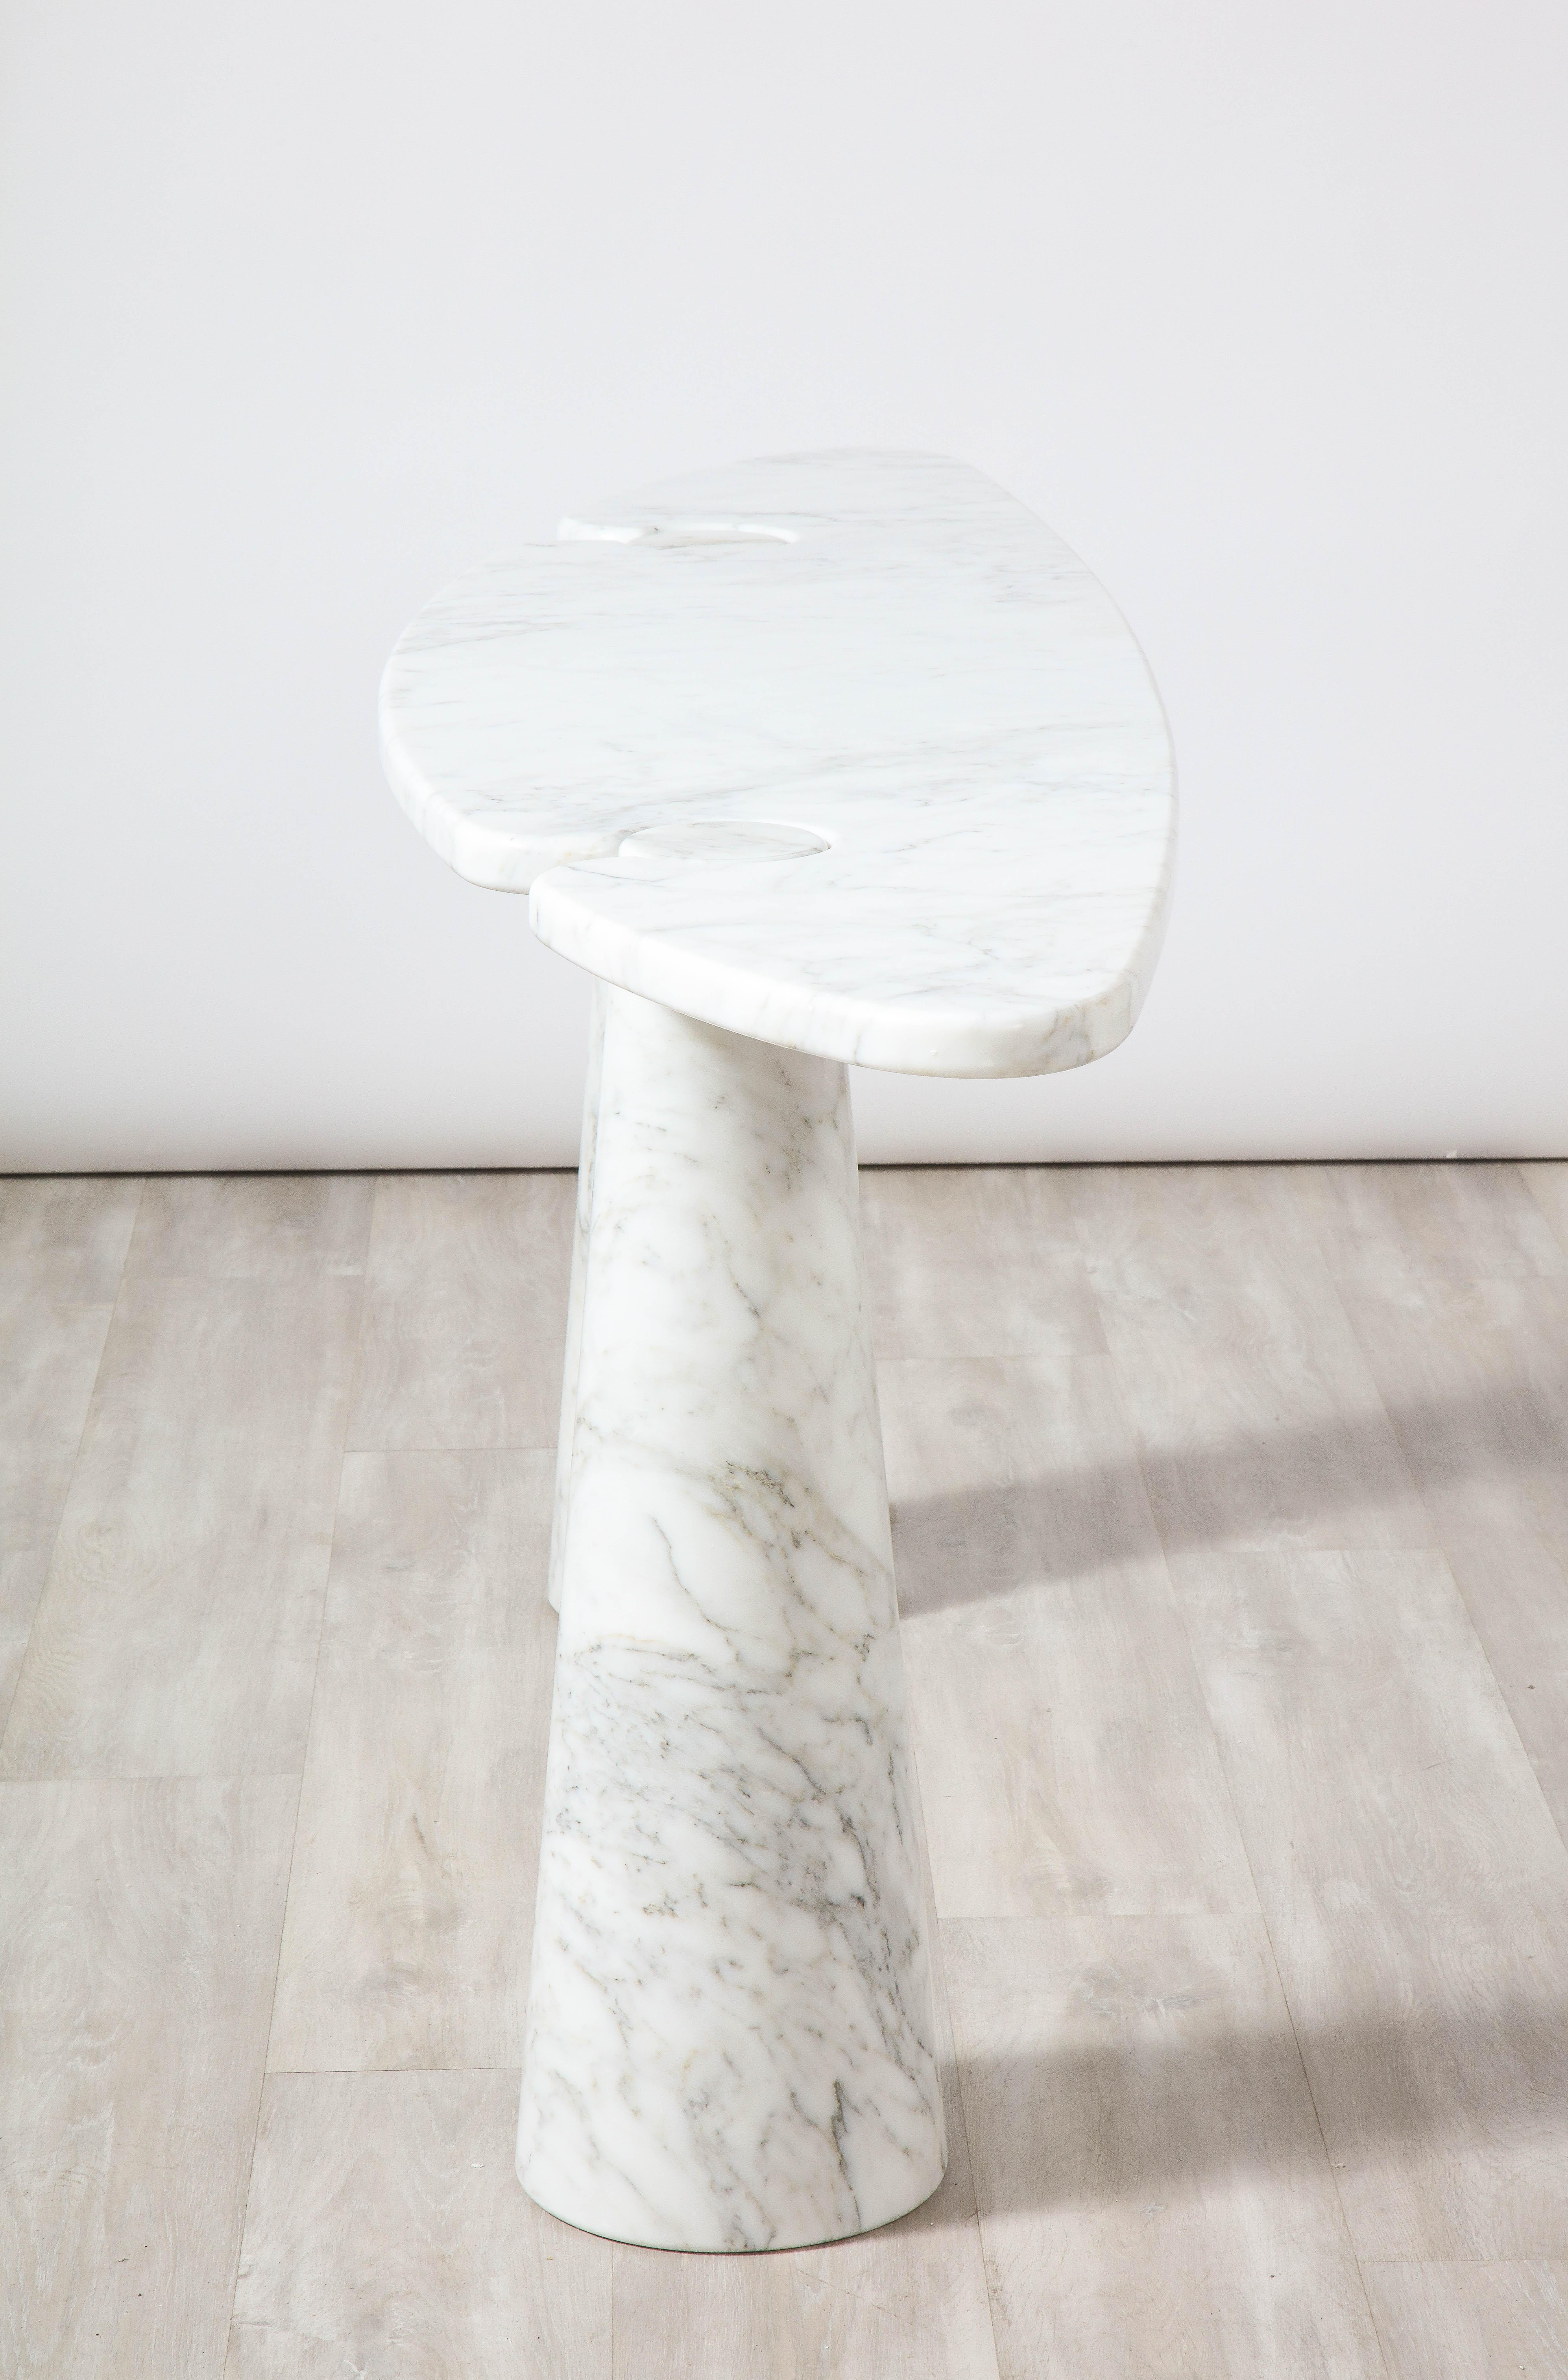 Angelo Mangiarotti 'Eros' Carrara Marble Console Table For Sale 4